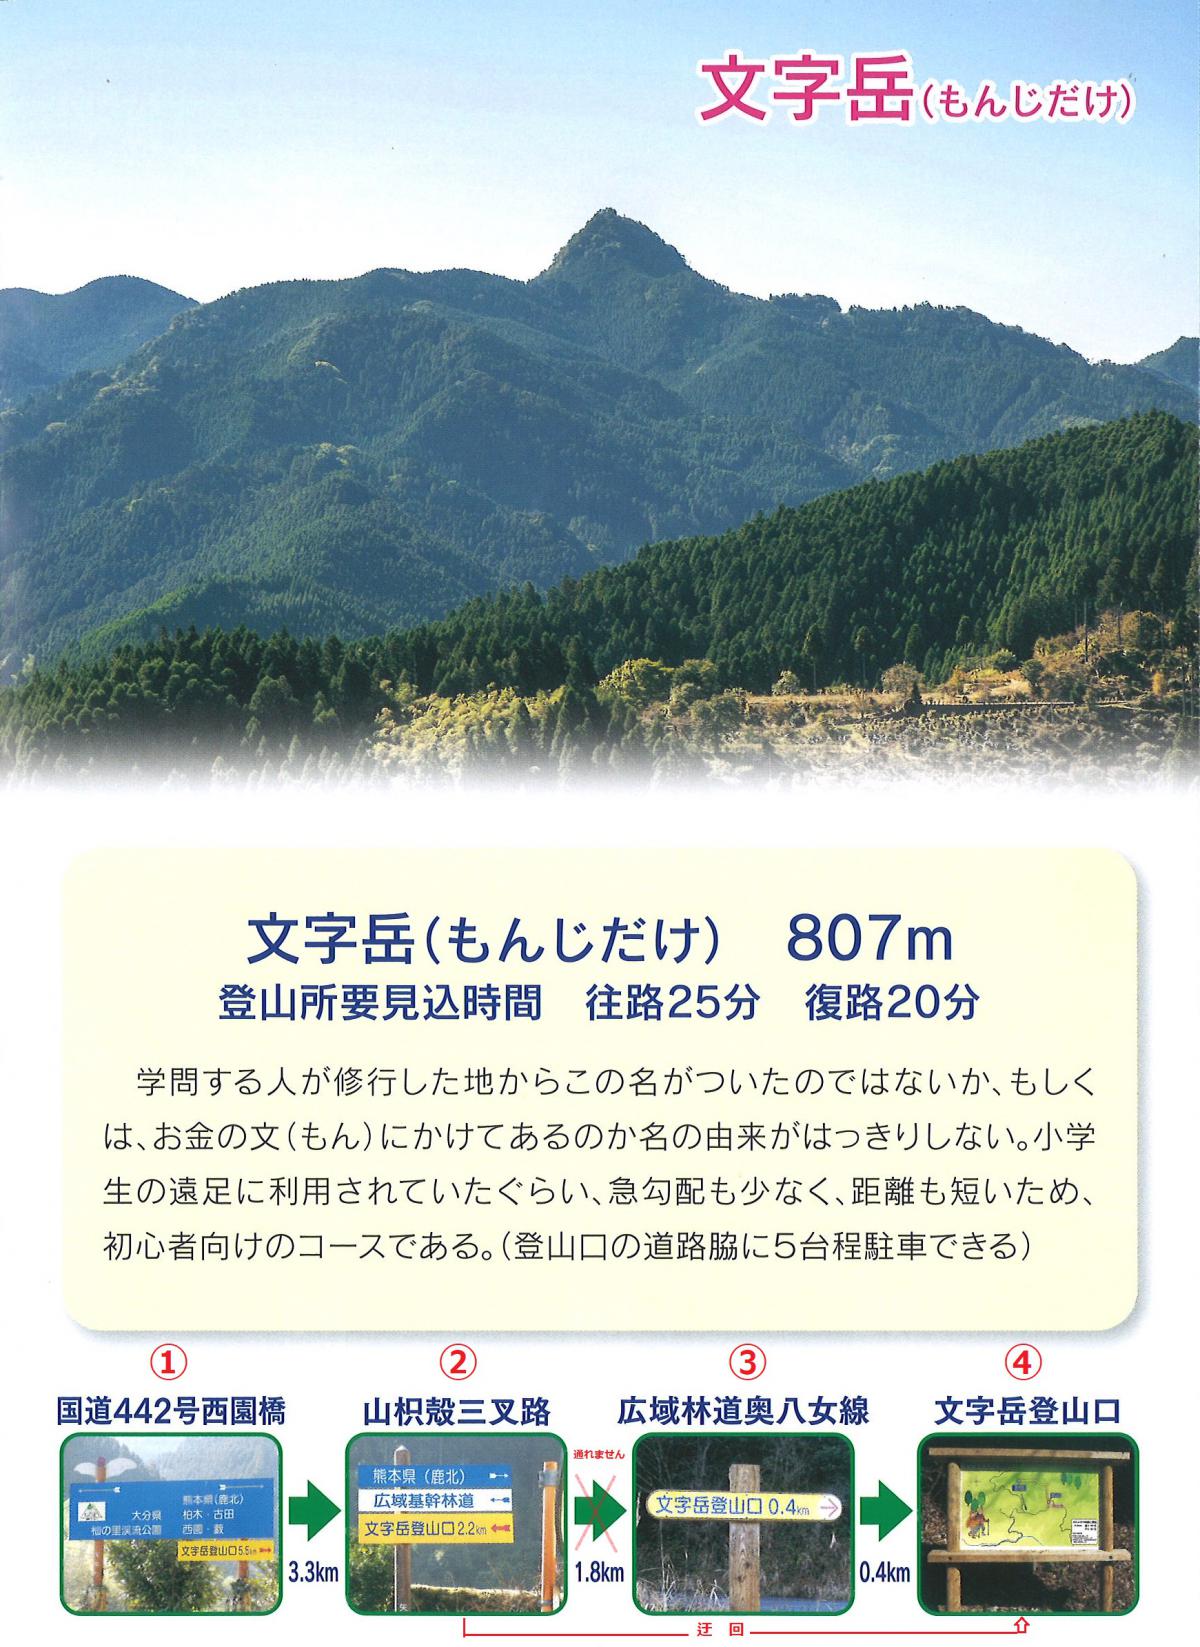 『文字岳』『釈迦岳』『鷹取山』登山の一部通行止めのお知らせ イメージ